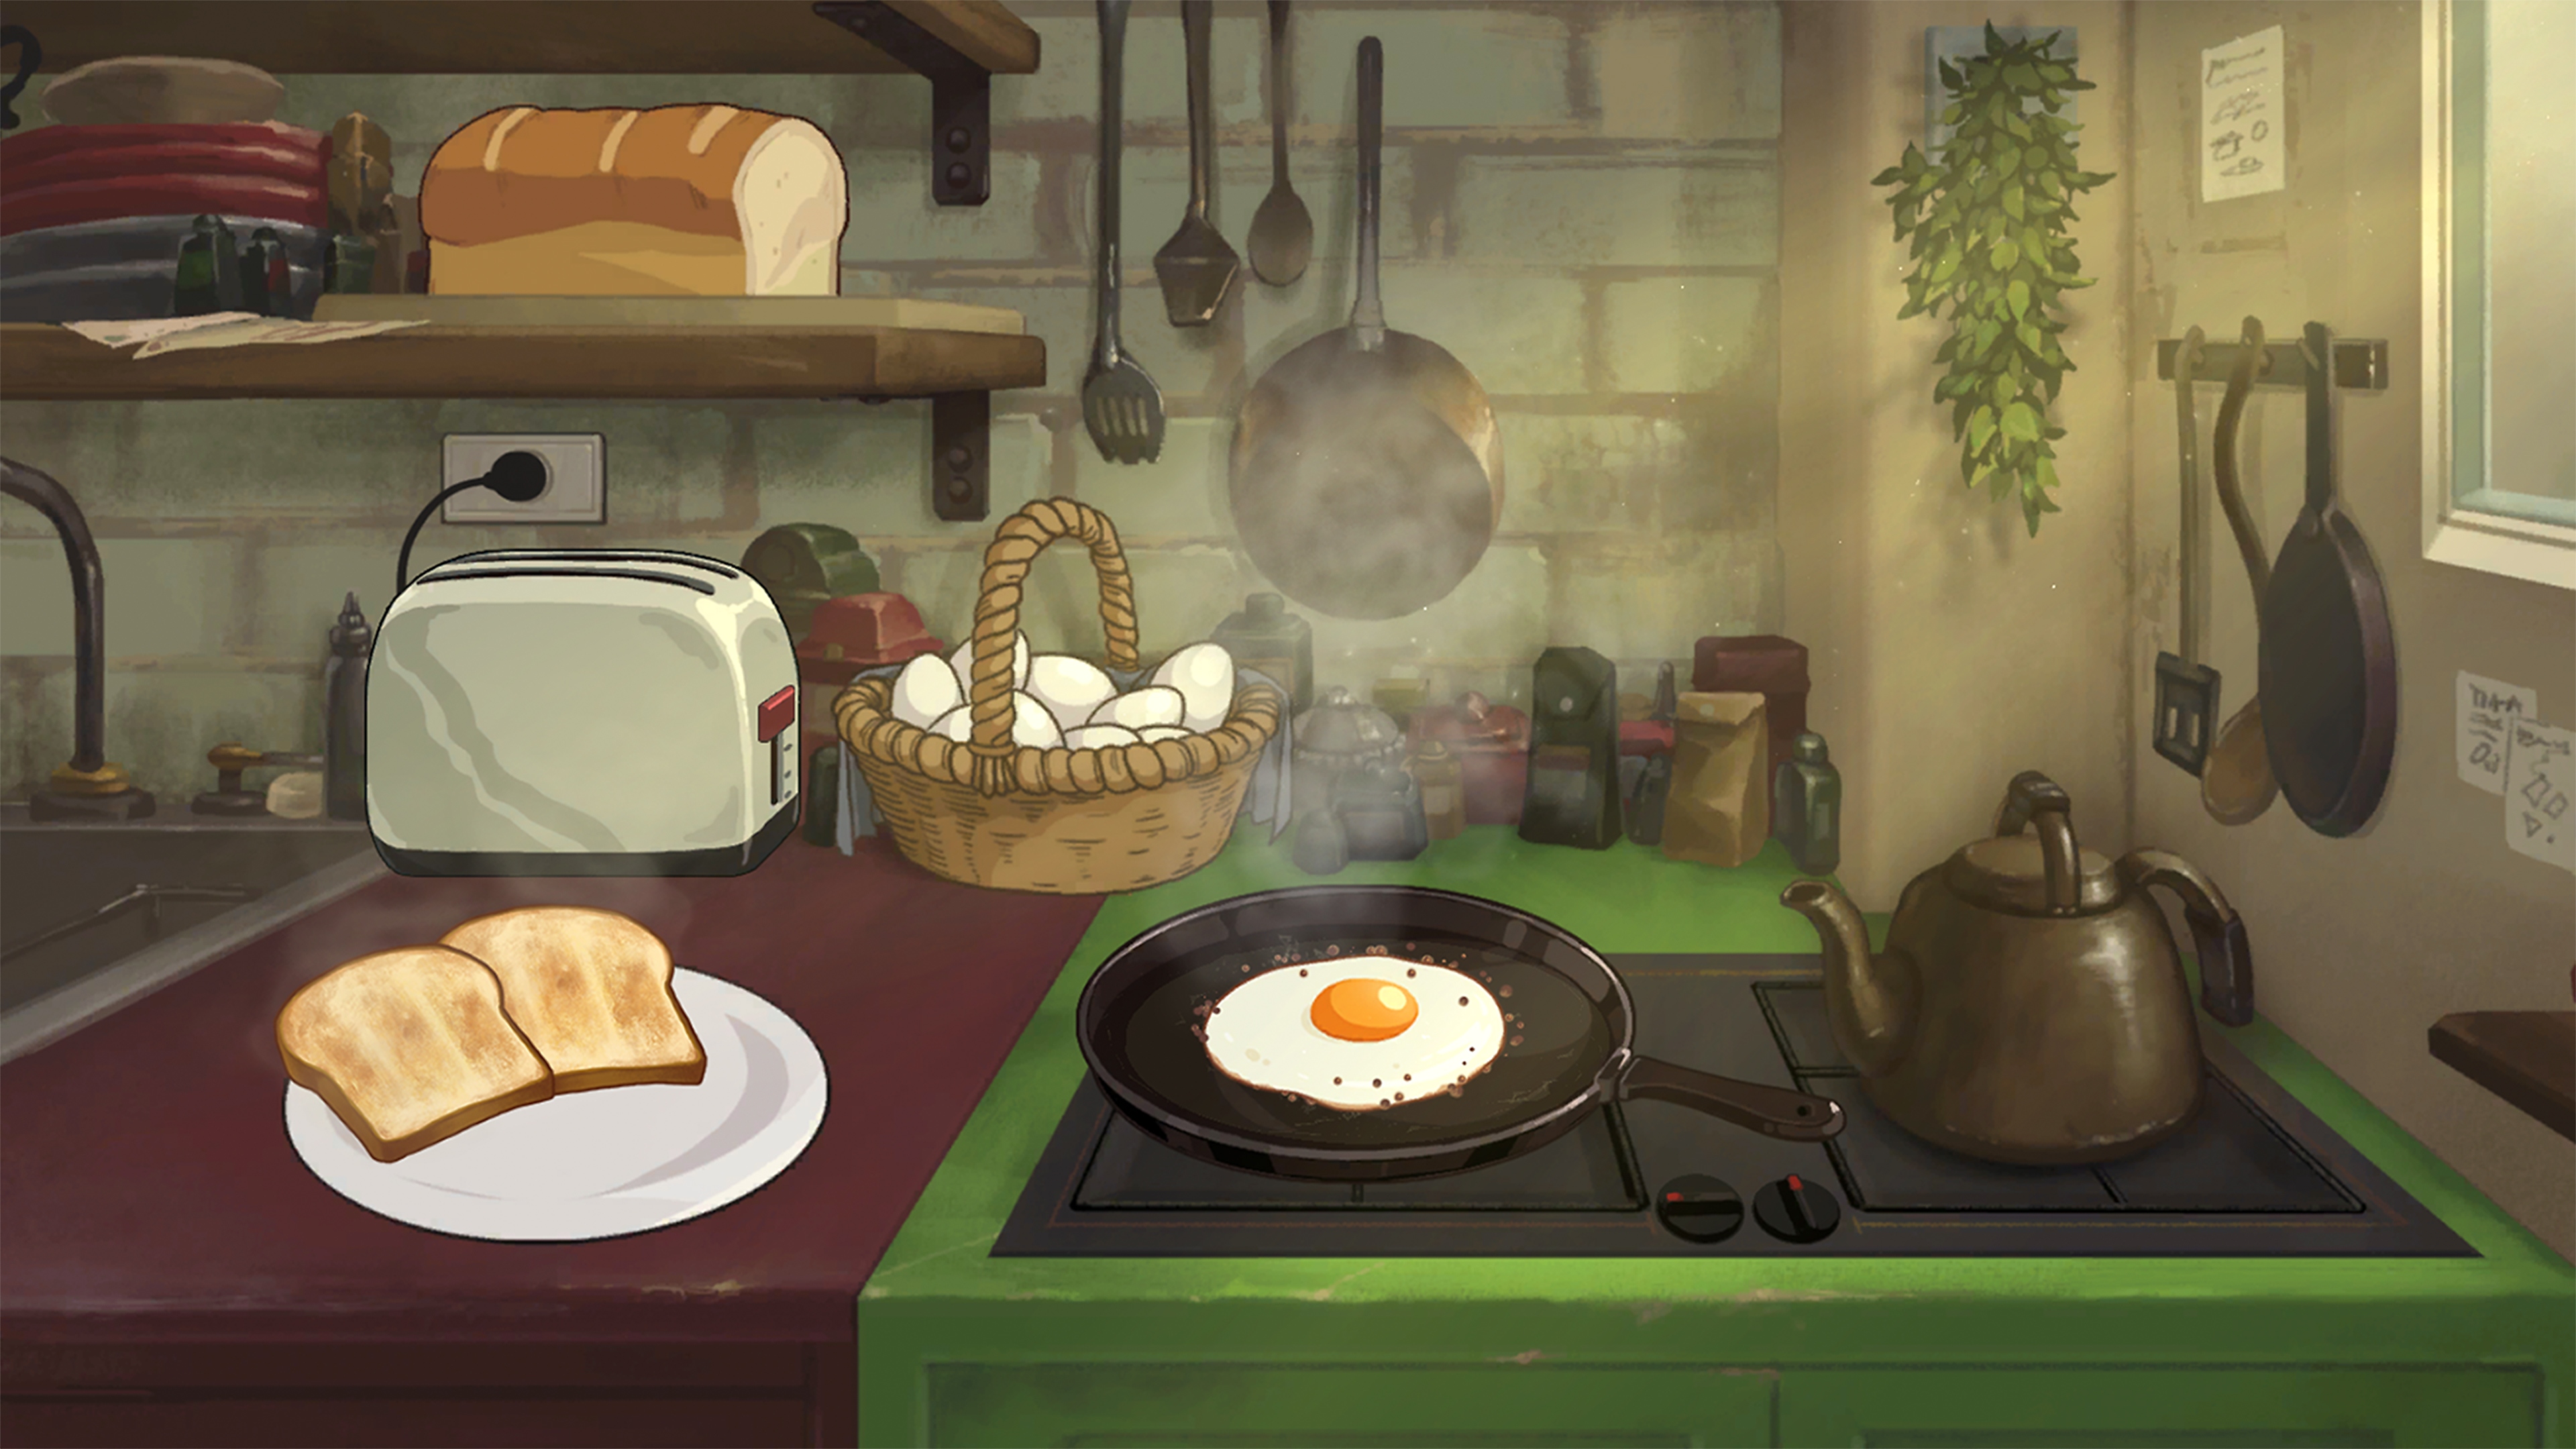 Behind the Frame: Das schönste Bild – Screenshot, der die Zubereitung eines Frühstücks auf einem Herd zeigt